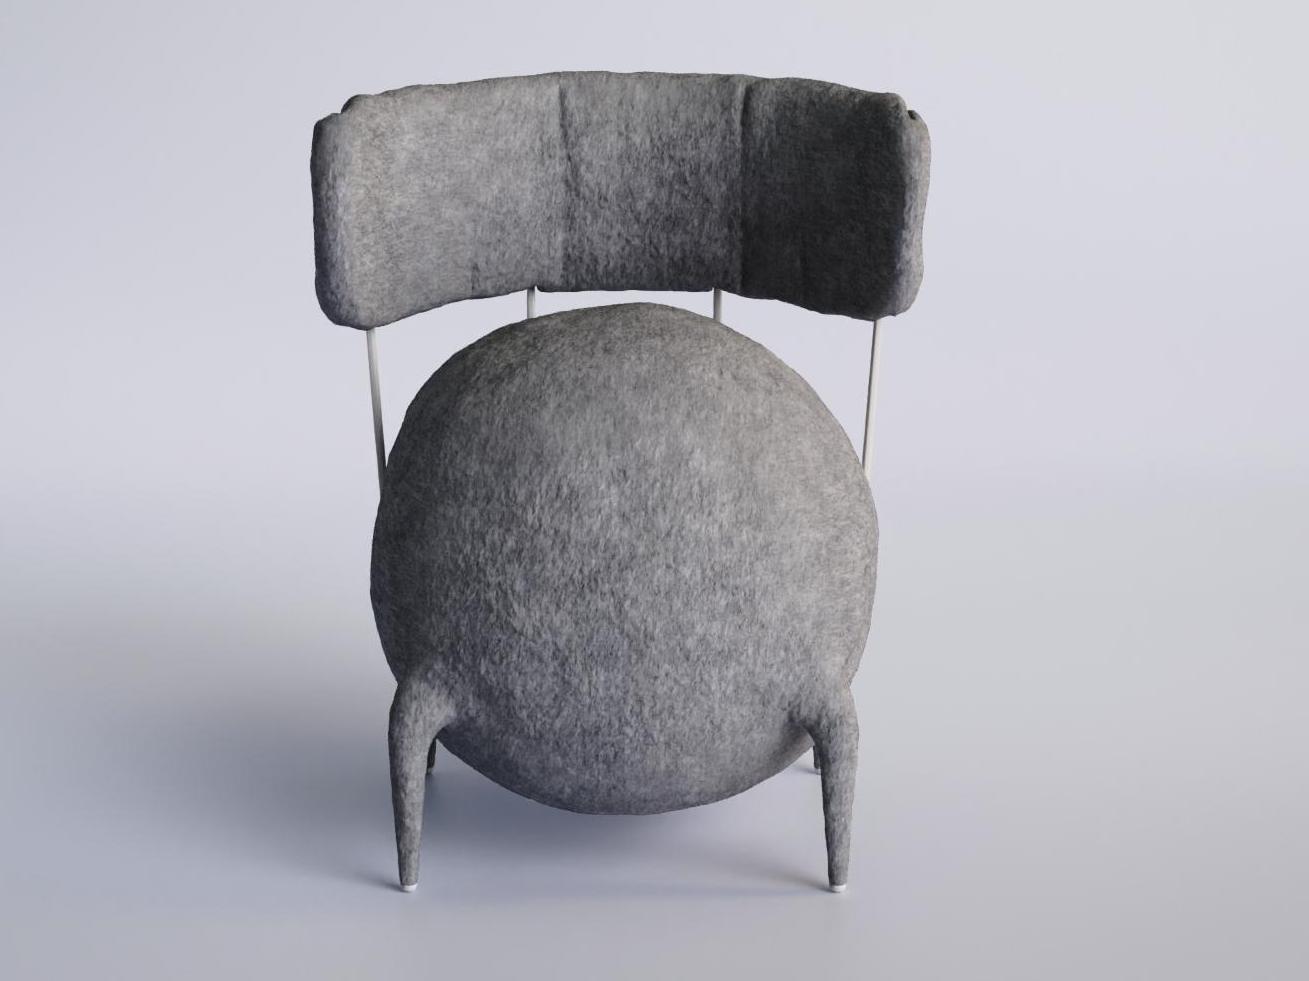 Новая версия кресла Lymphochair дизайнера Тараса Жёлтышева